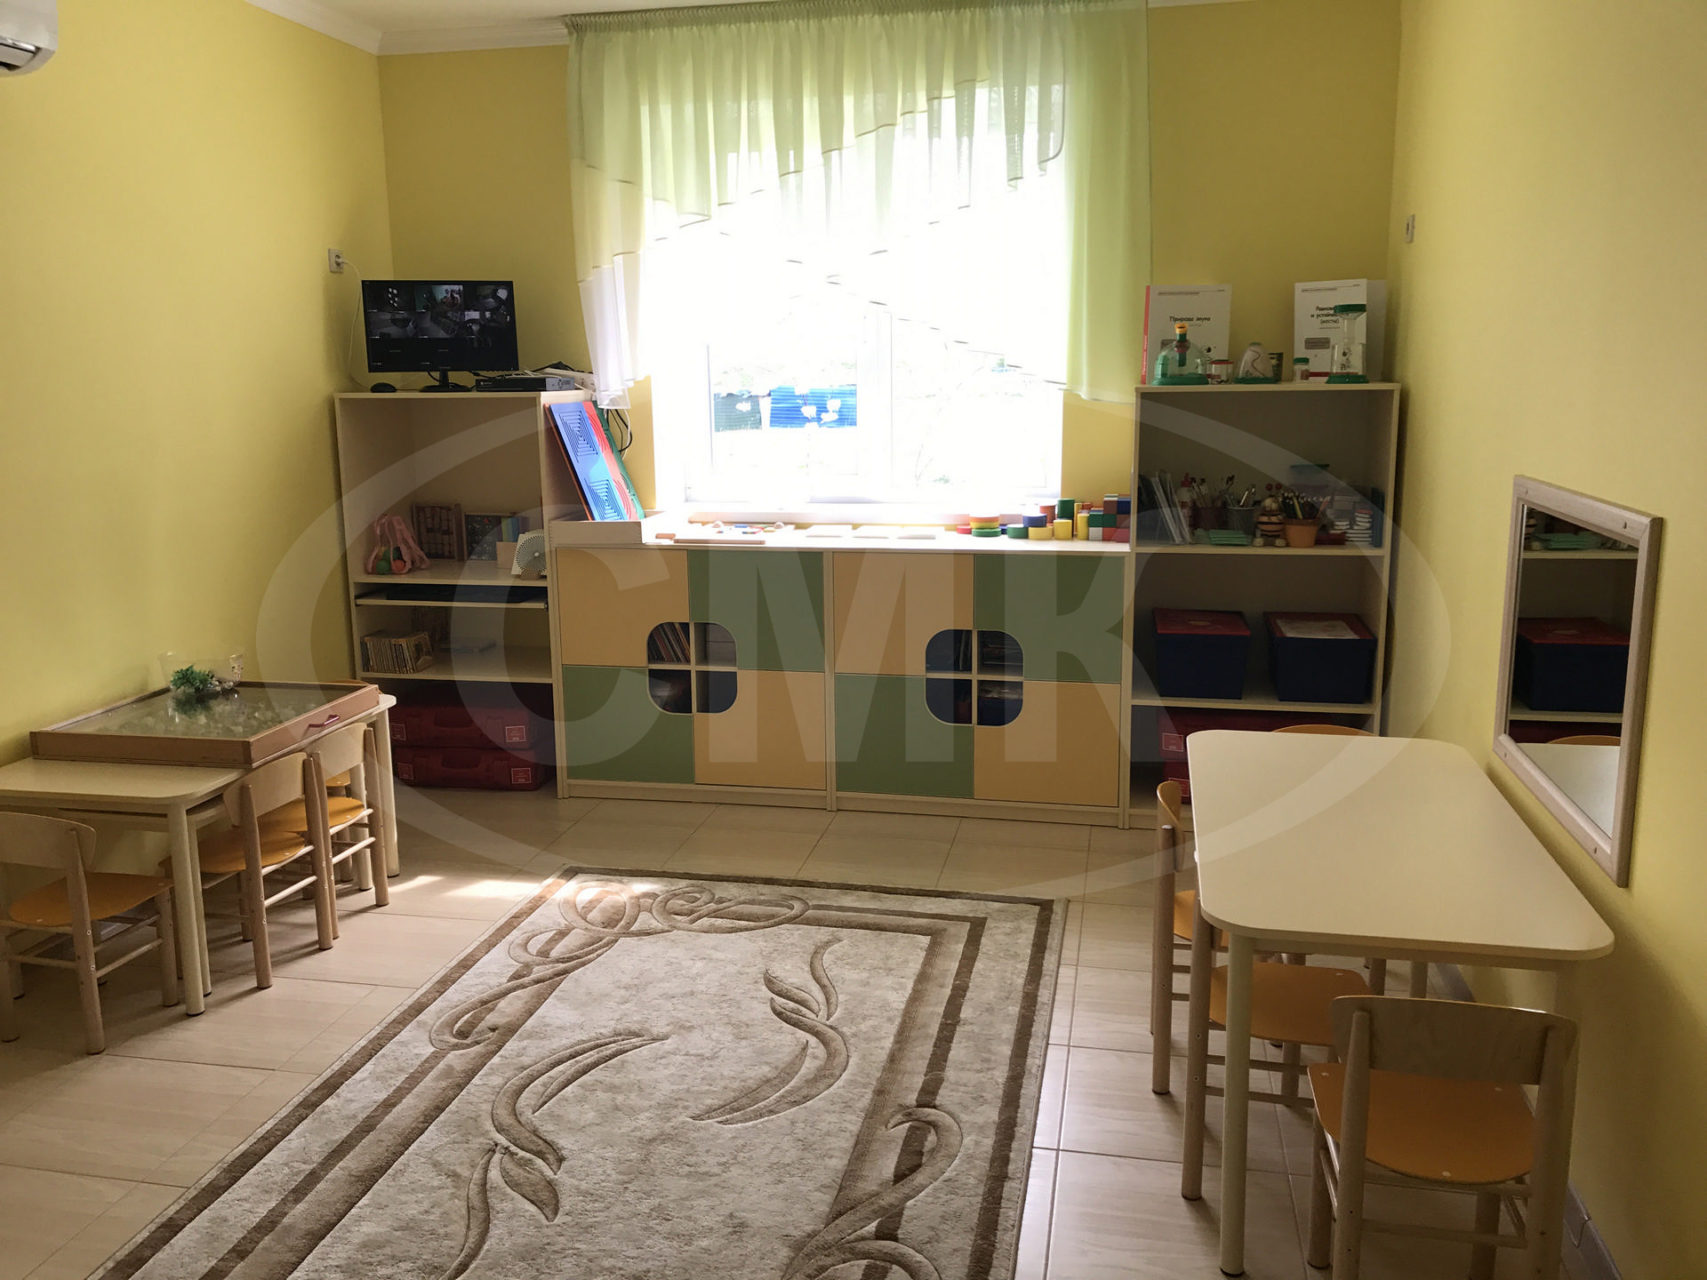 Мебель для детских учреждений - стенка игровая, столы и стулья.